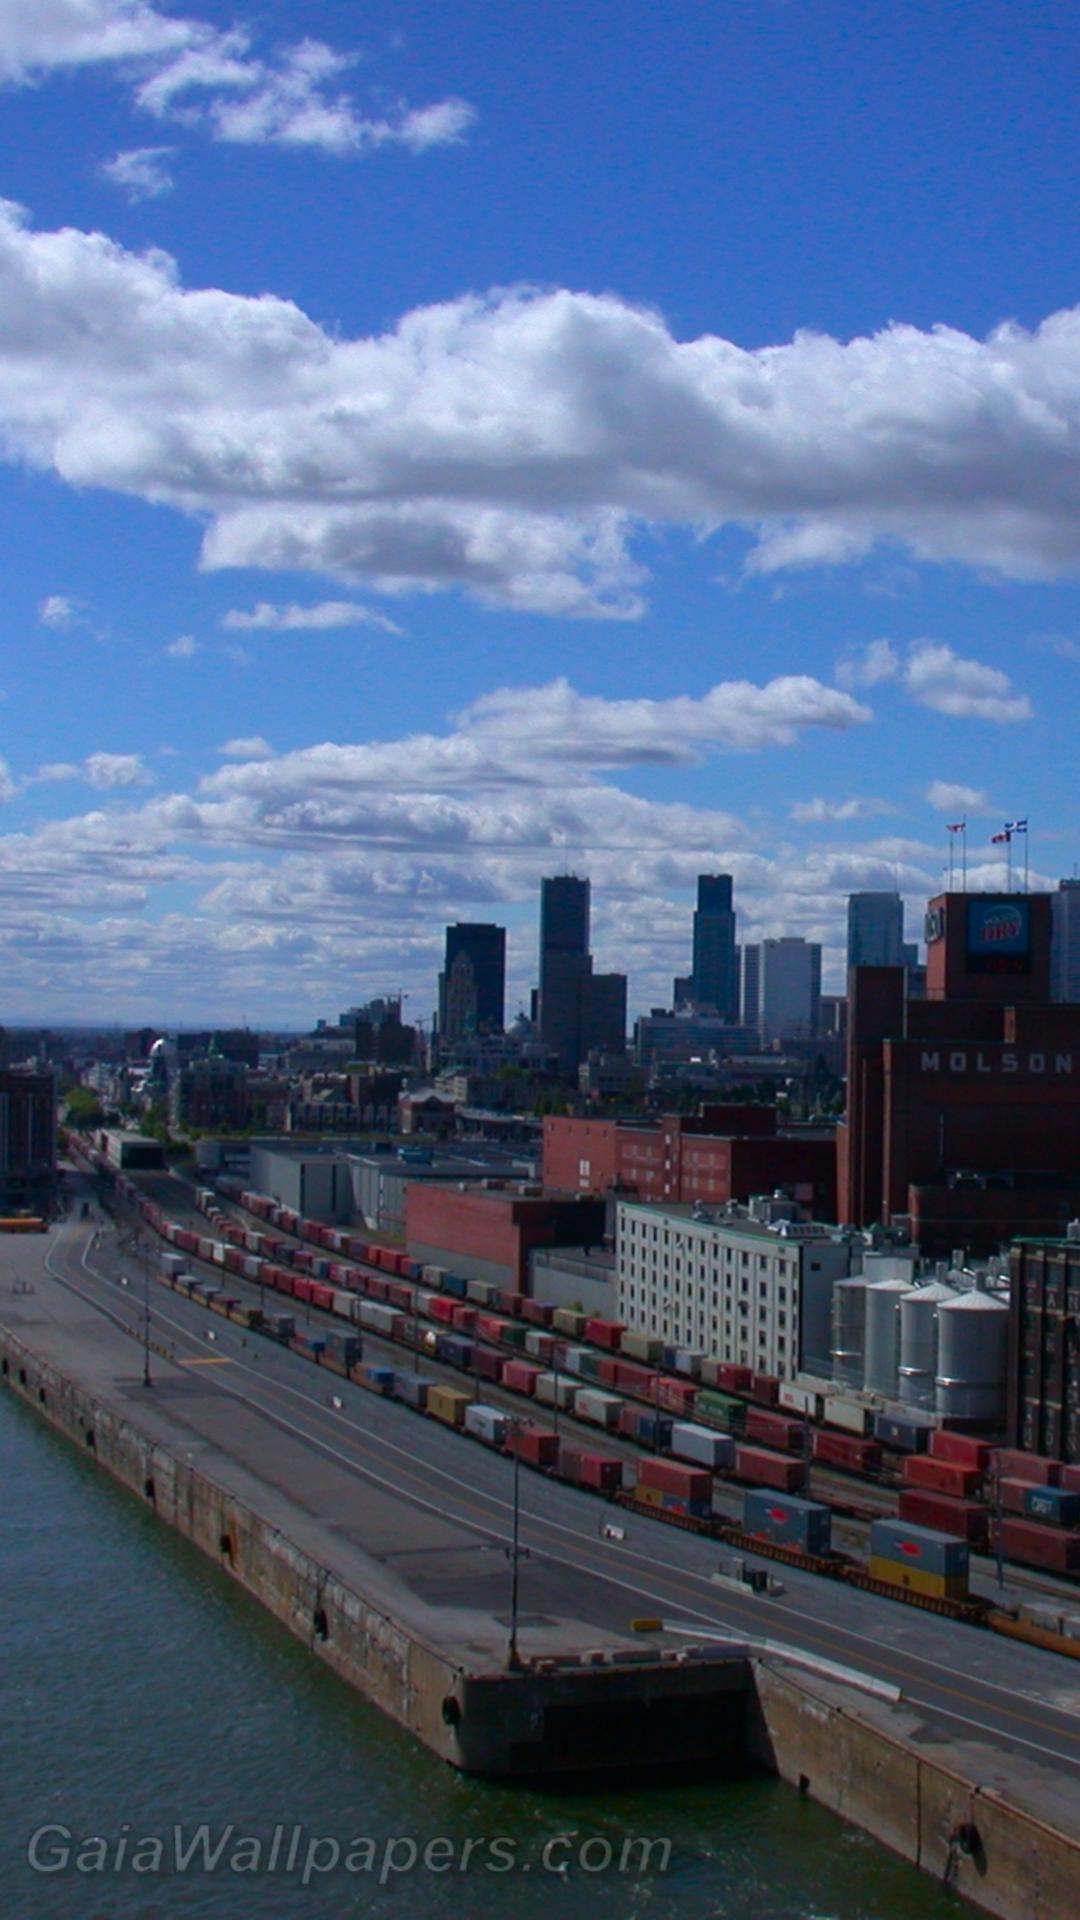 Vieux-Port de Montréal vu du Pont Jacques-Cartier - Fonds d'écran gratuits